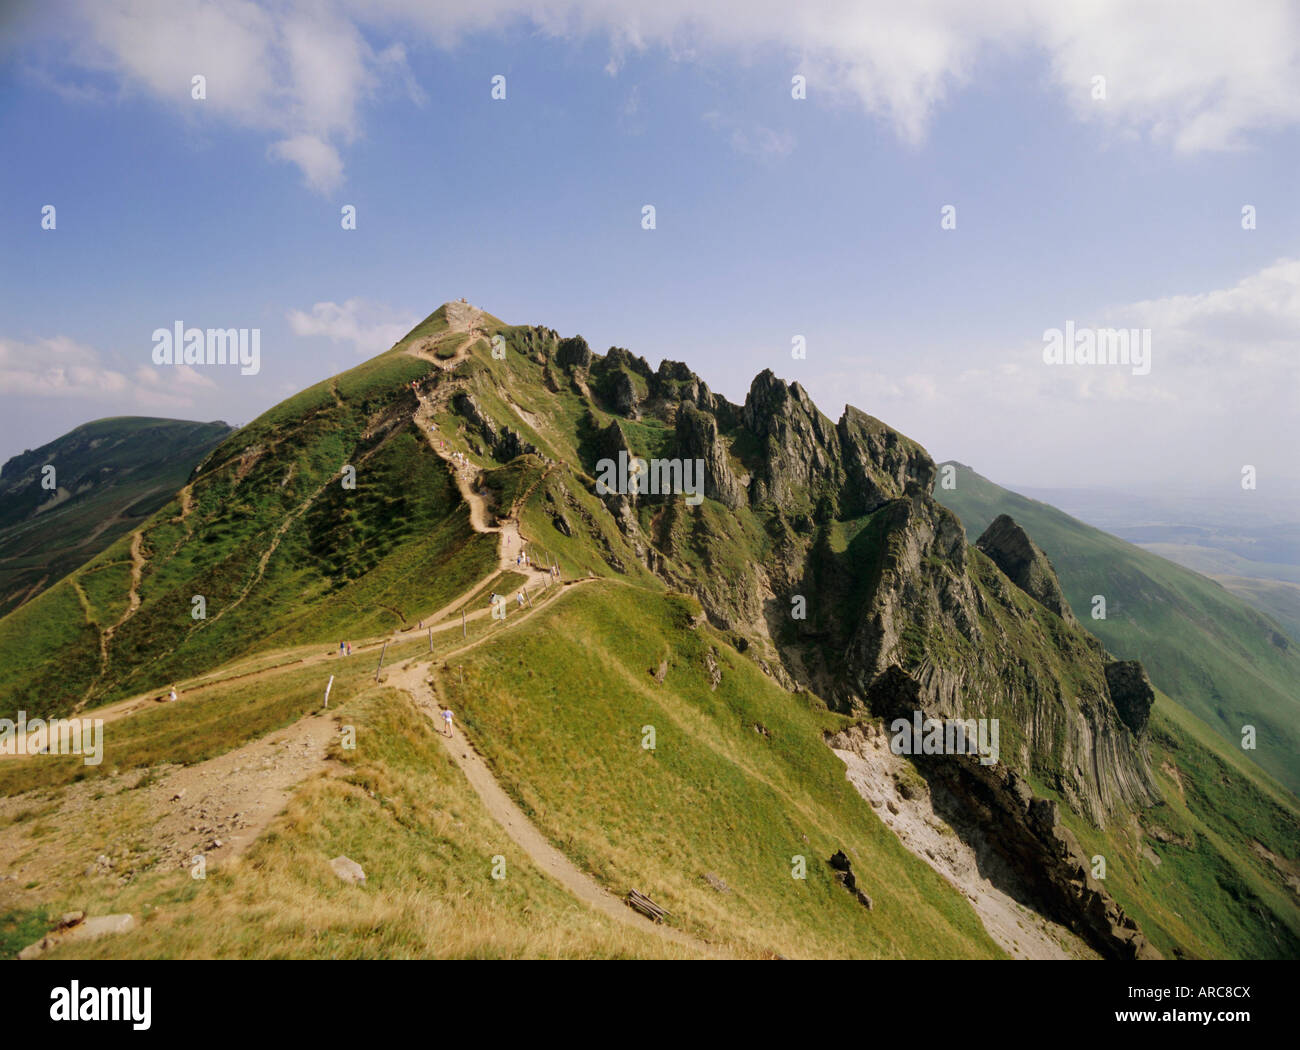 Gipfel des Puy de Sancy, Puy de Dome, Park Naturel Regional des Vulkane d ' Auvergne, Massif Central, Aquitaine, Frankreich, Europa Stockfoto